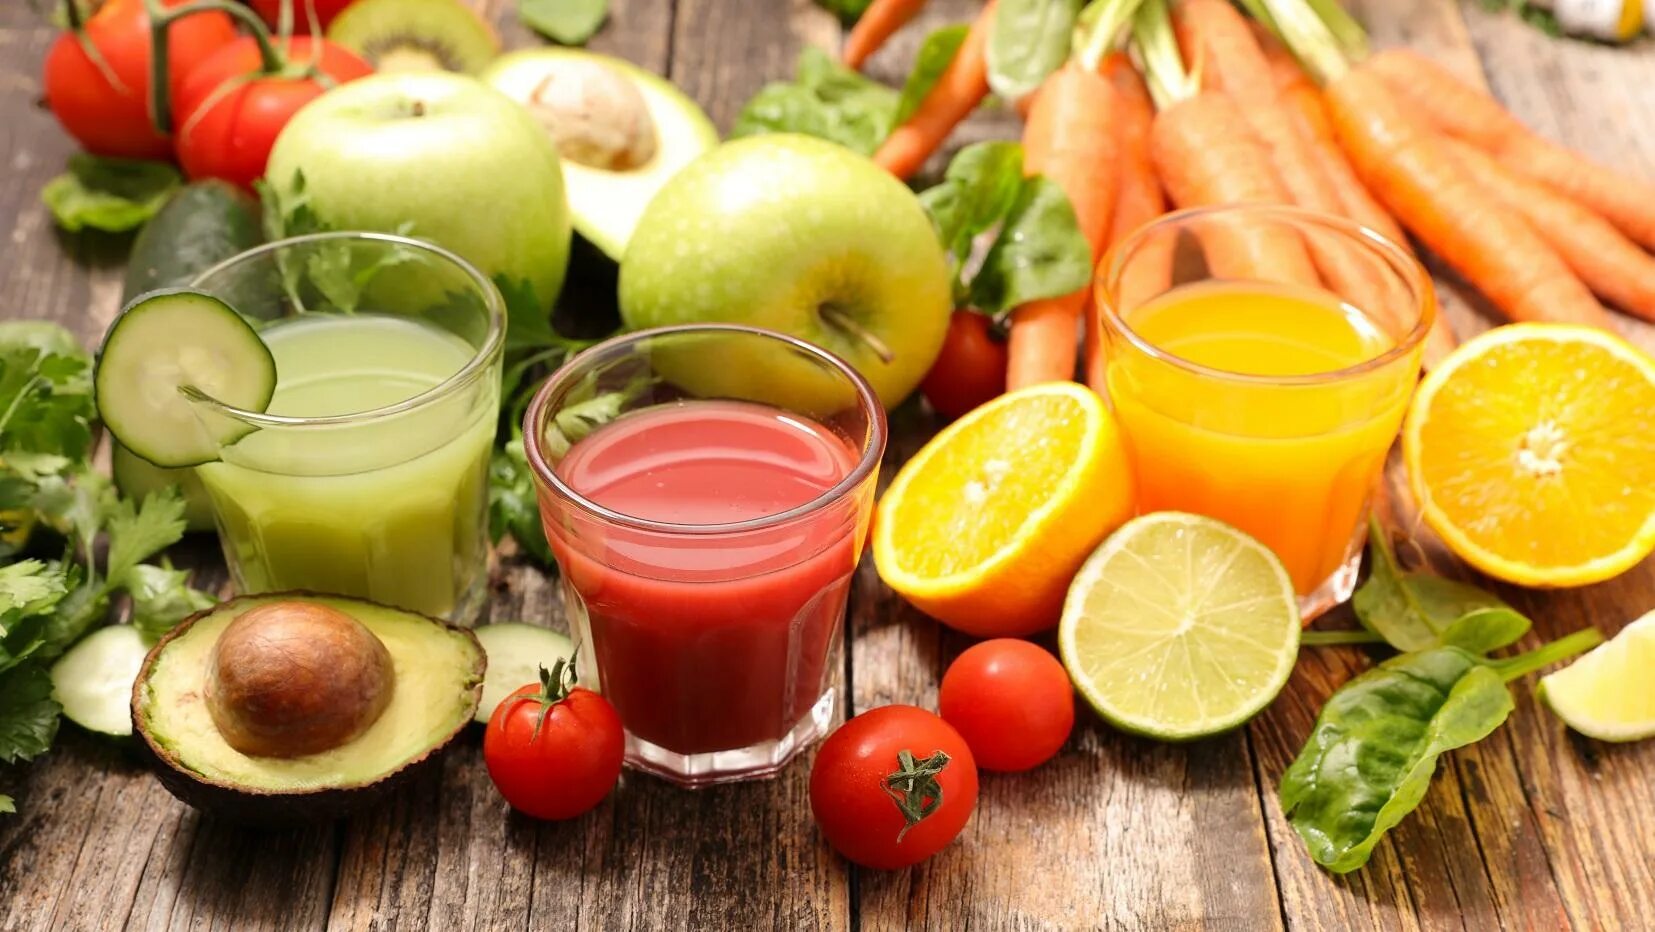 Соки из овощей и фруктов. Фруктовый сок. Свежевыжатый овощной сок. Плодово овощные соки. Питание фруктовыми соками